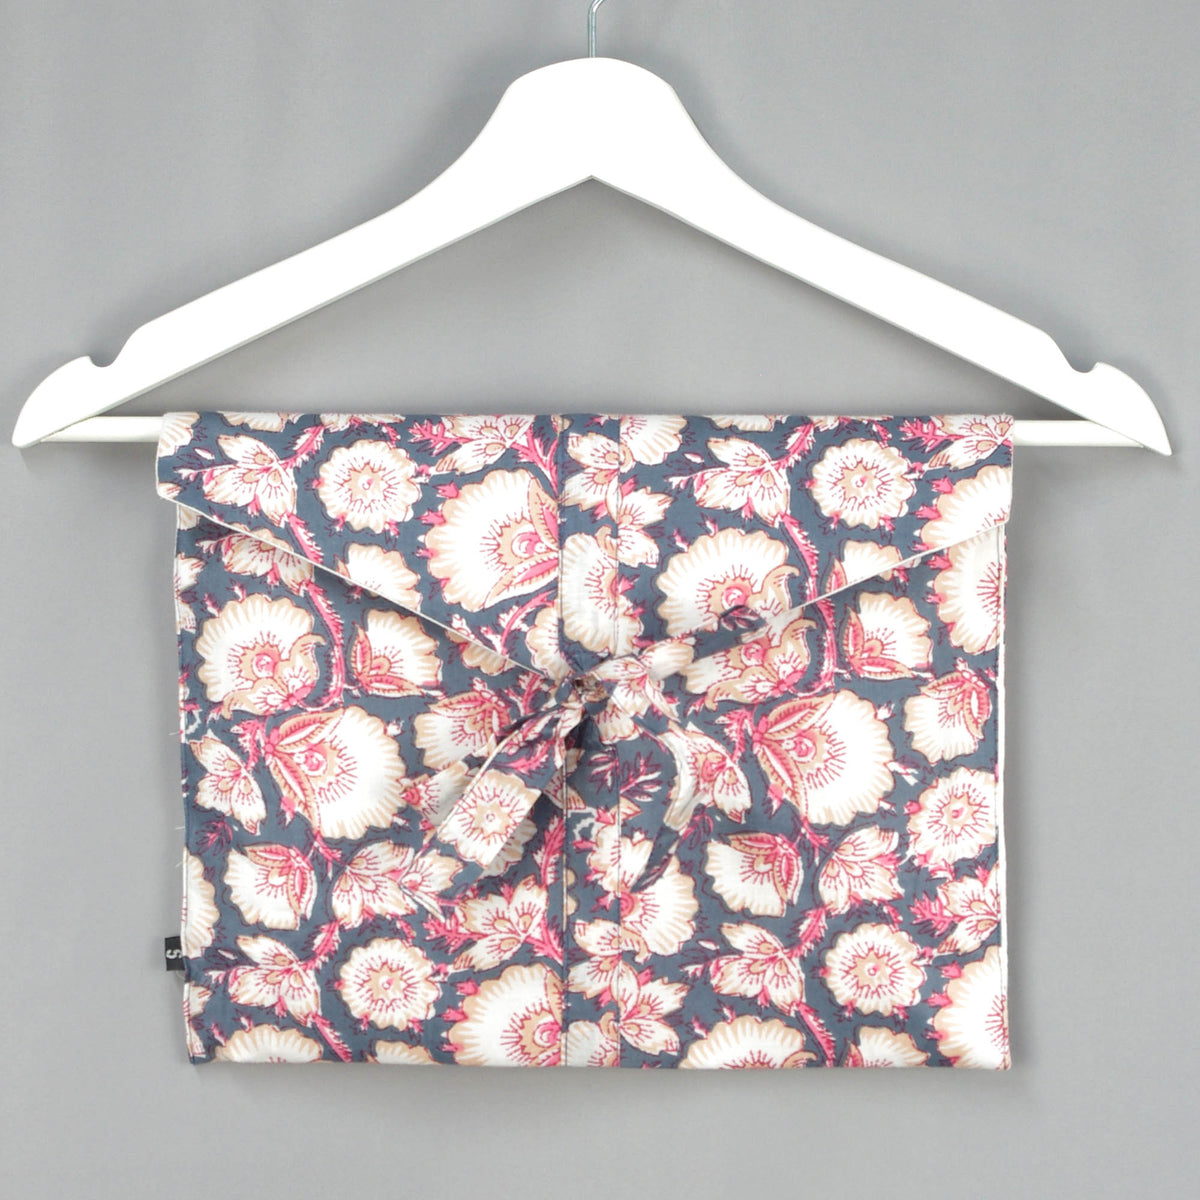 Langes bläulich-graues Pyjama-Set mit rosafarbenem Blumen-Blockdruck-Design